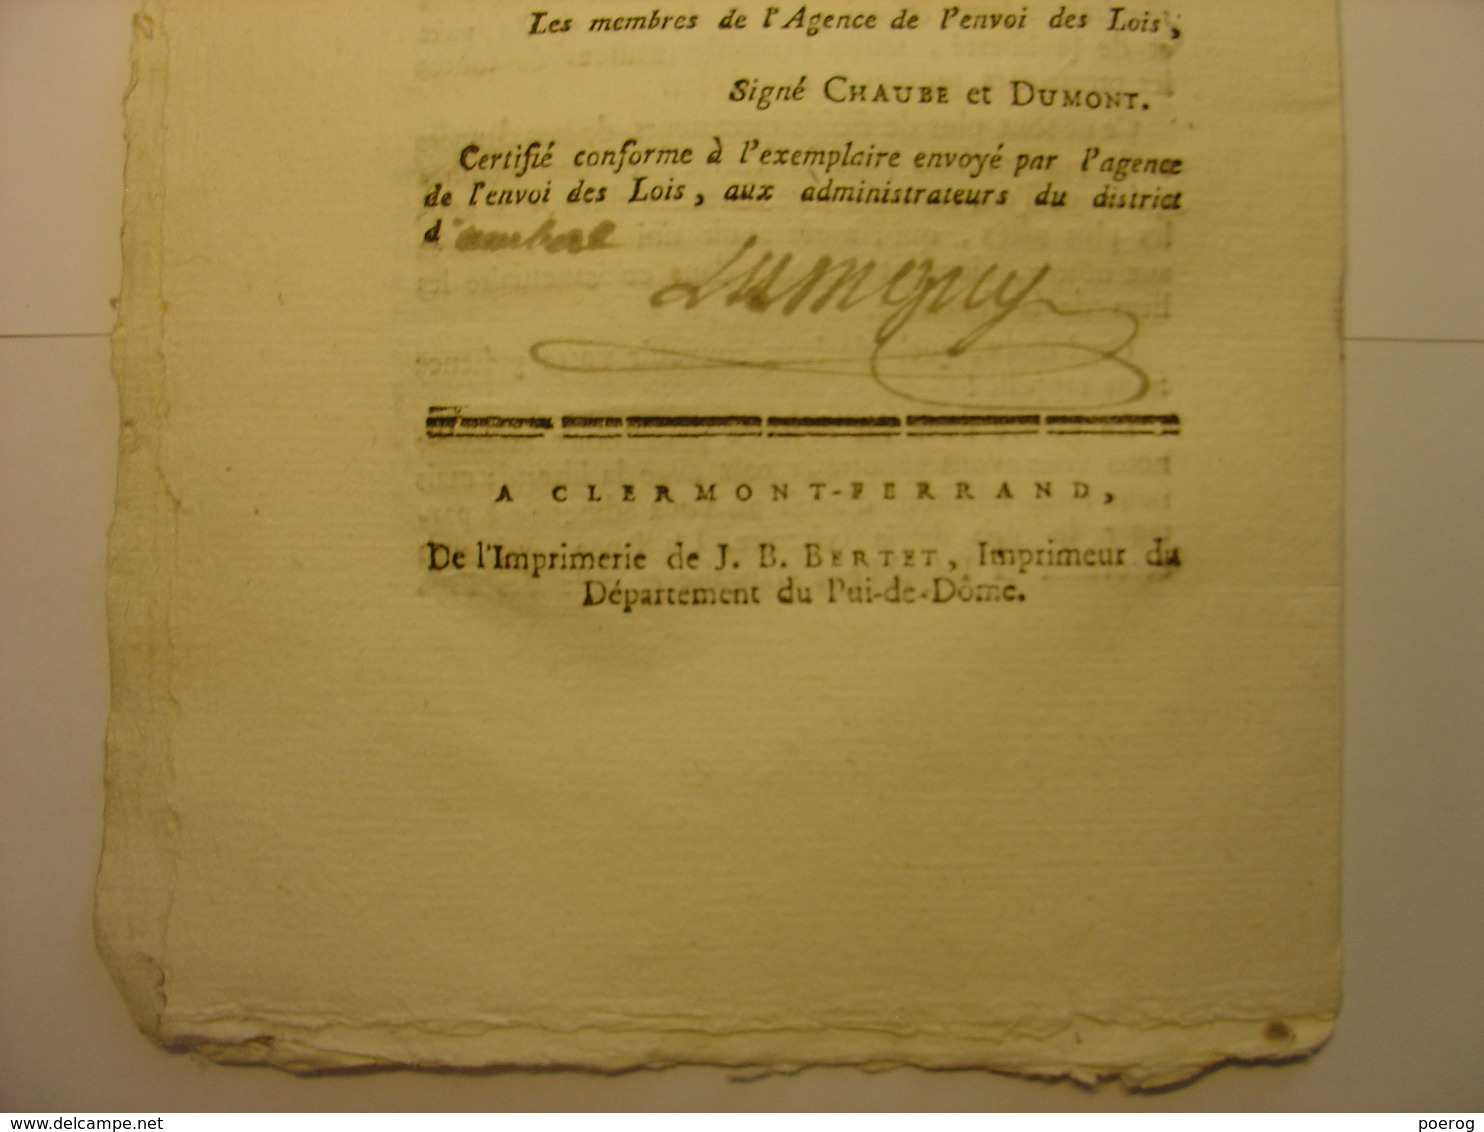 EXTRAIT PROCES VERBAL 1795 CONVENTION NATIONALE - GRASVELD SITTER HOLLANDE PROVINCES UNIES DES PAYS BAS TRAITE DE PAIX - Decrees & Laws